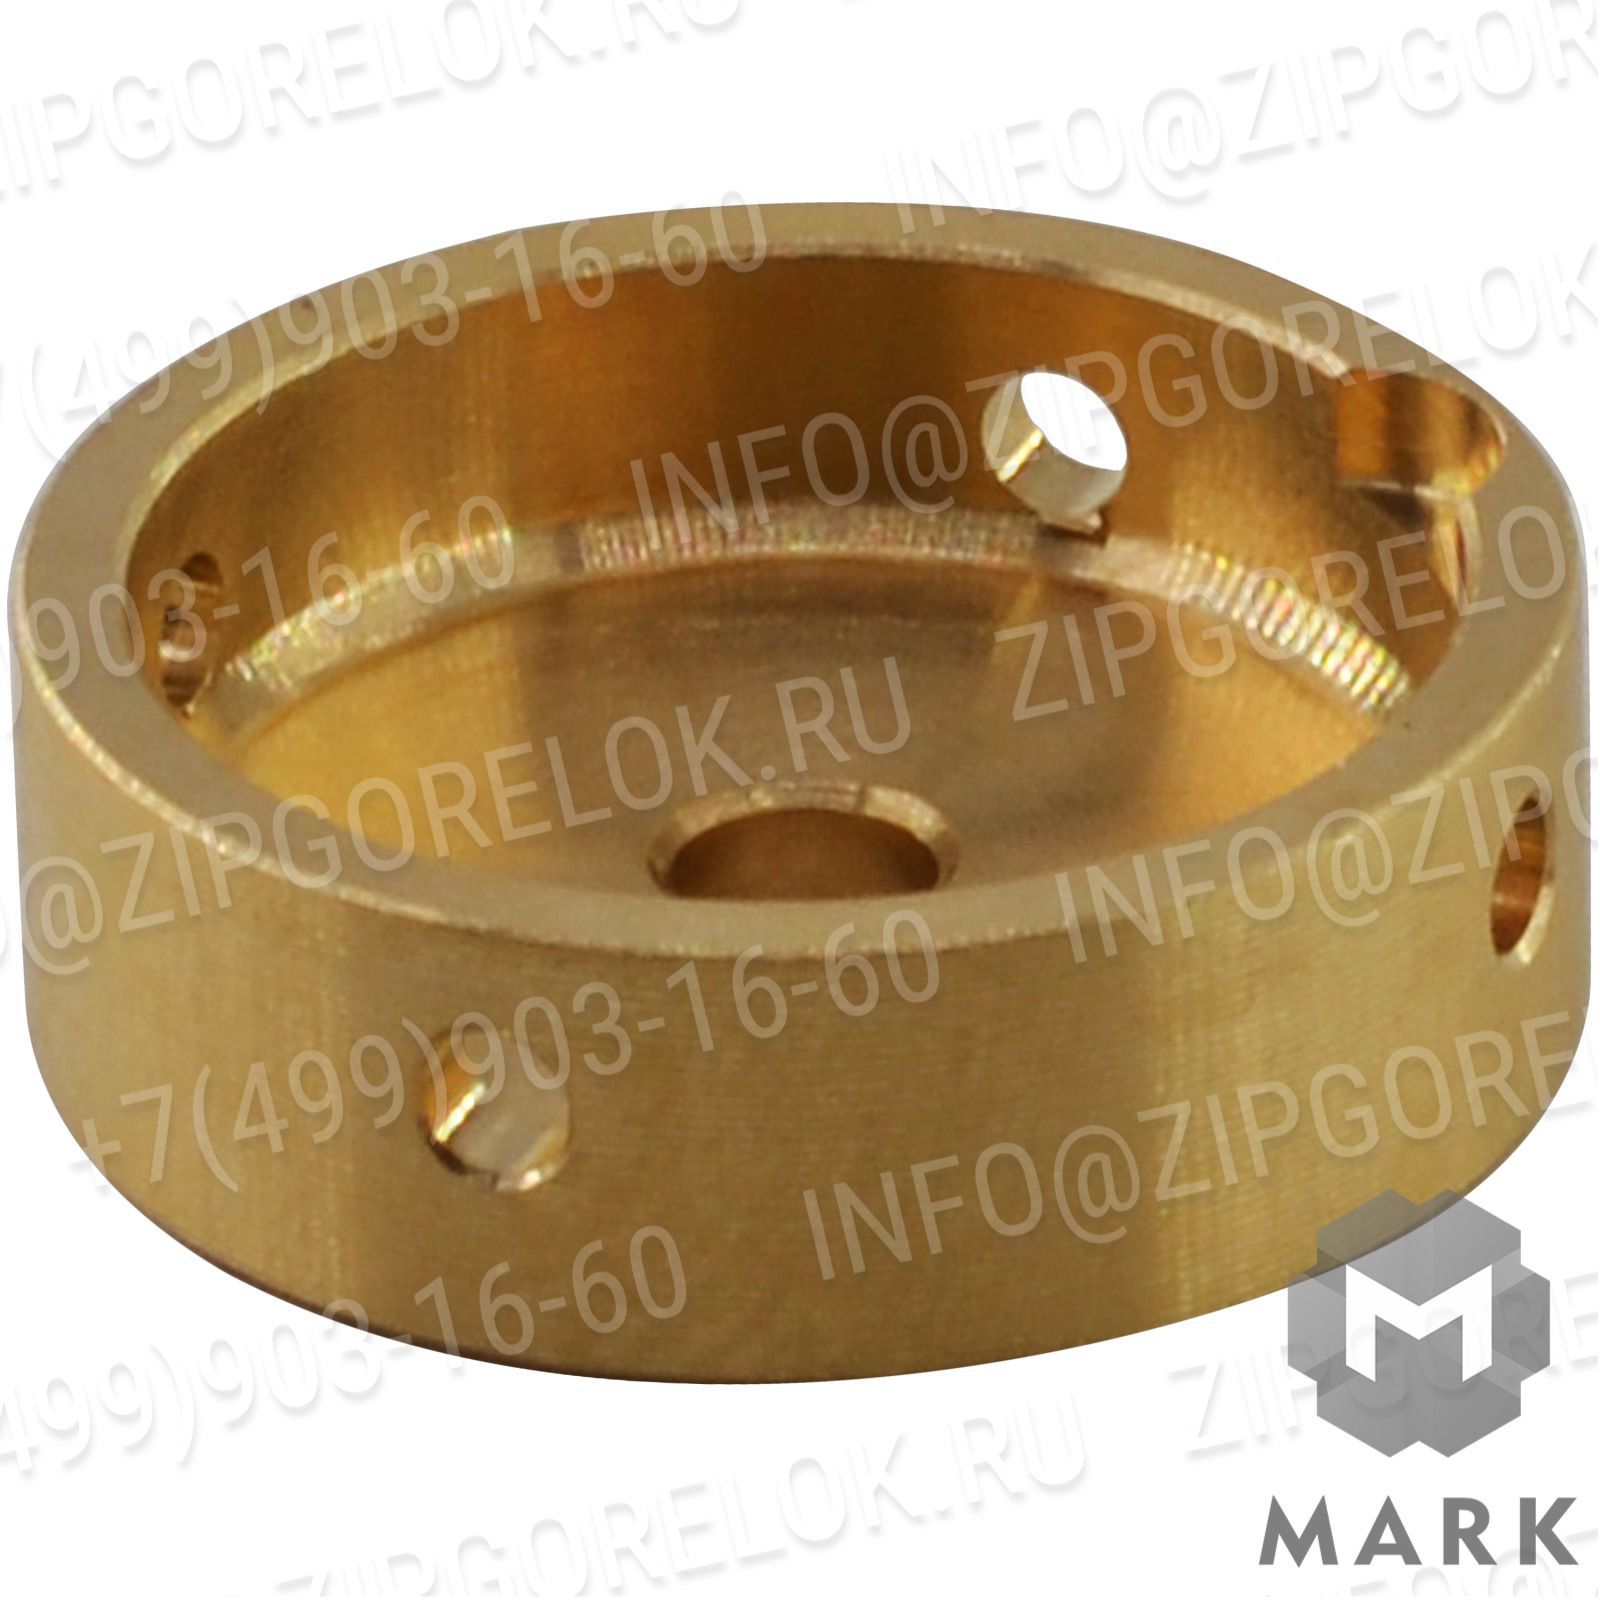 65321614 Жидкотопливные компоненты: Гибкий топливный шланг TUBOFLEX 1"1/2X1500 MD/FD